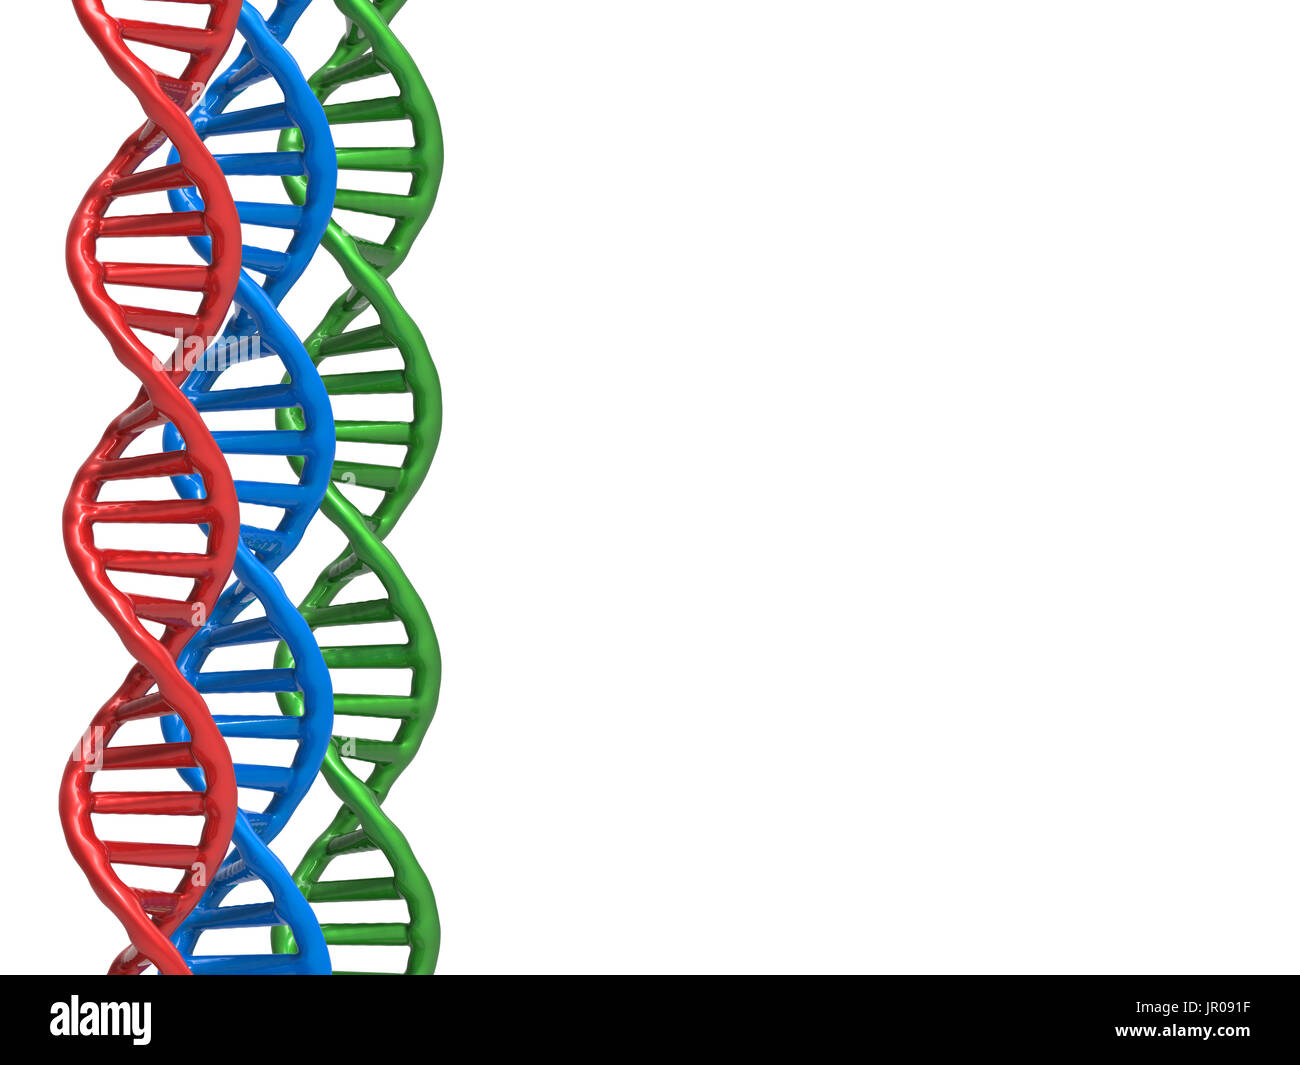 Il rendering 3d la struttura del DNA o DNA Helix su sfondo bianco Foto Stock